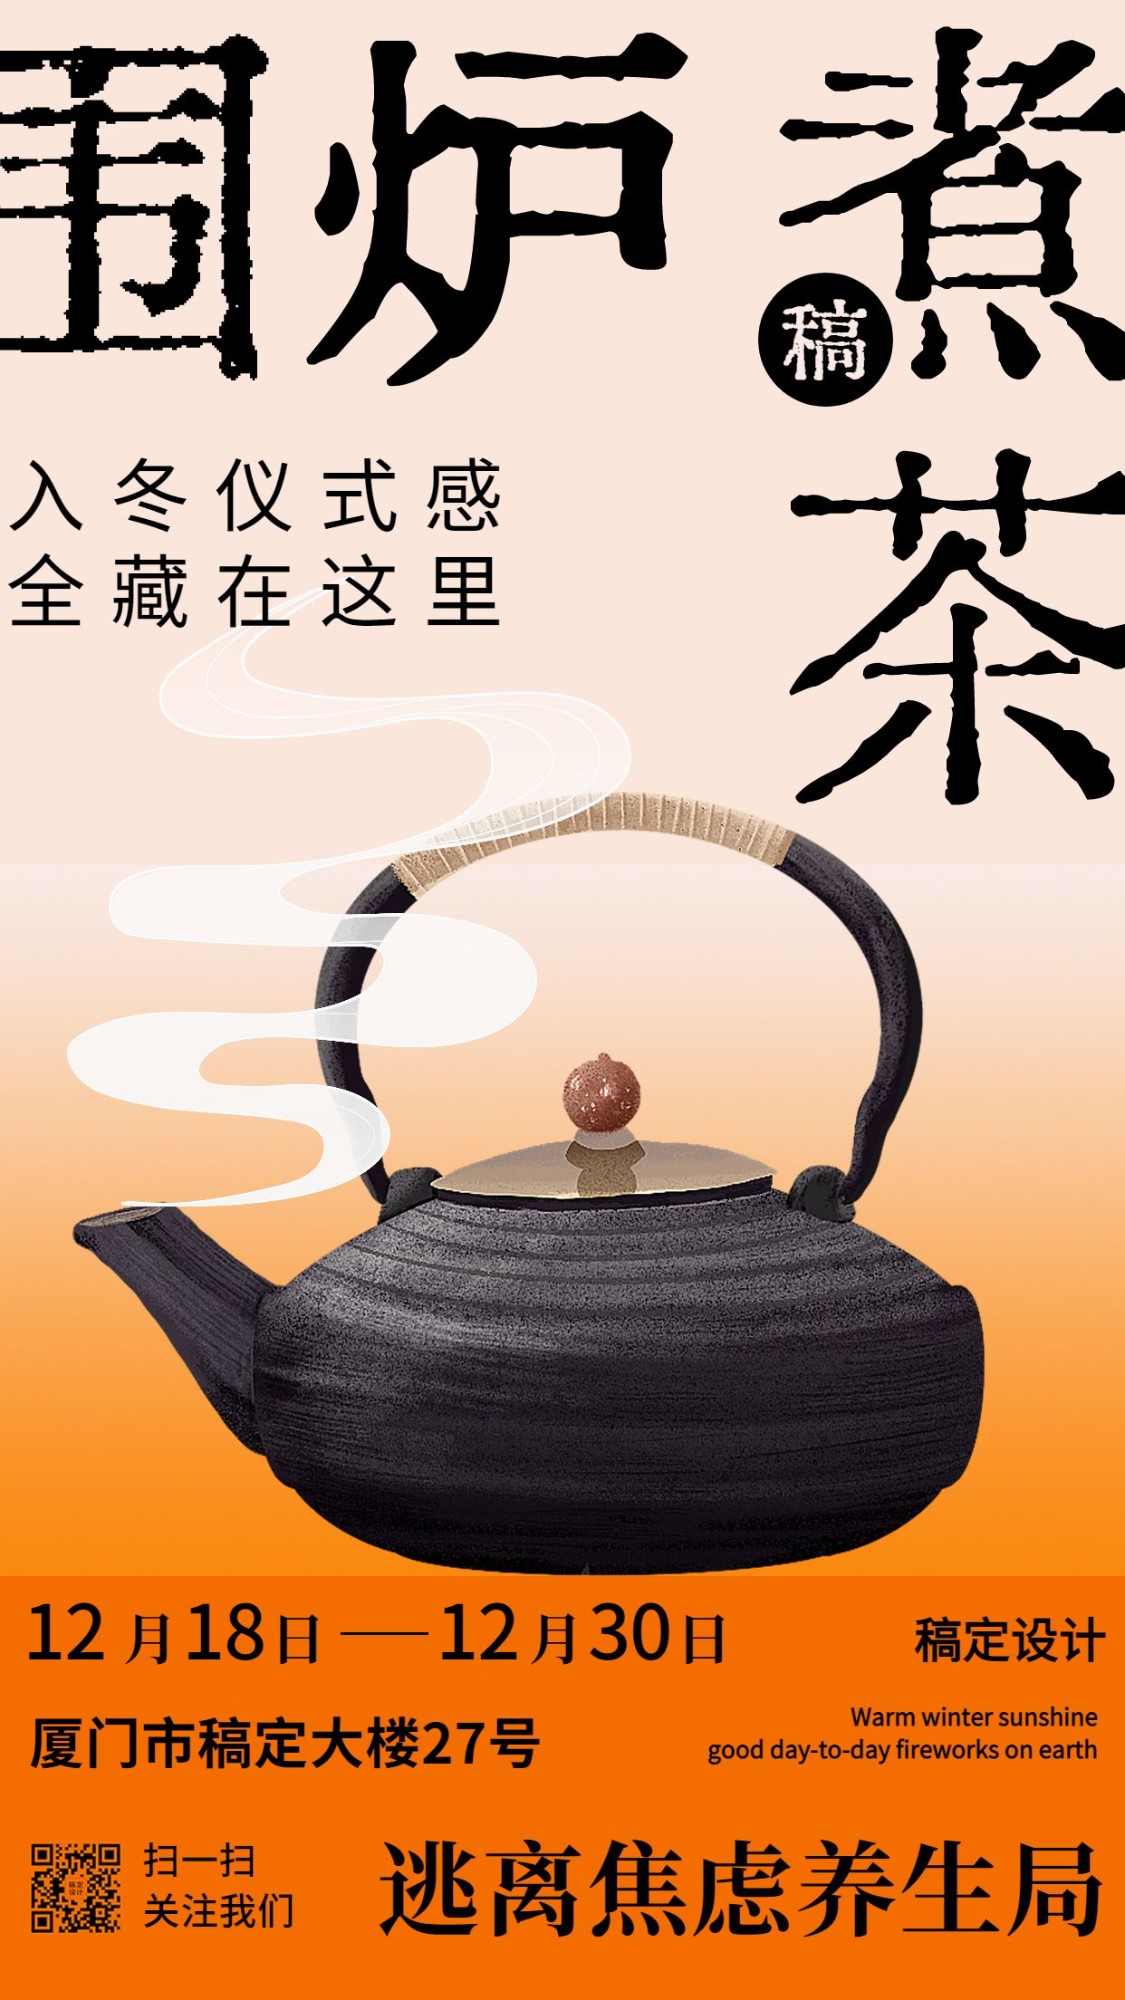 围炉煮茶休闲娱乐活动宣传海报